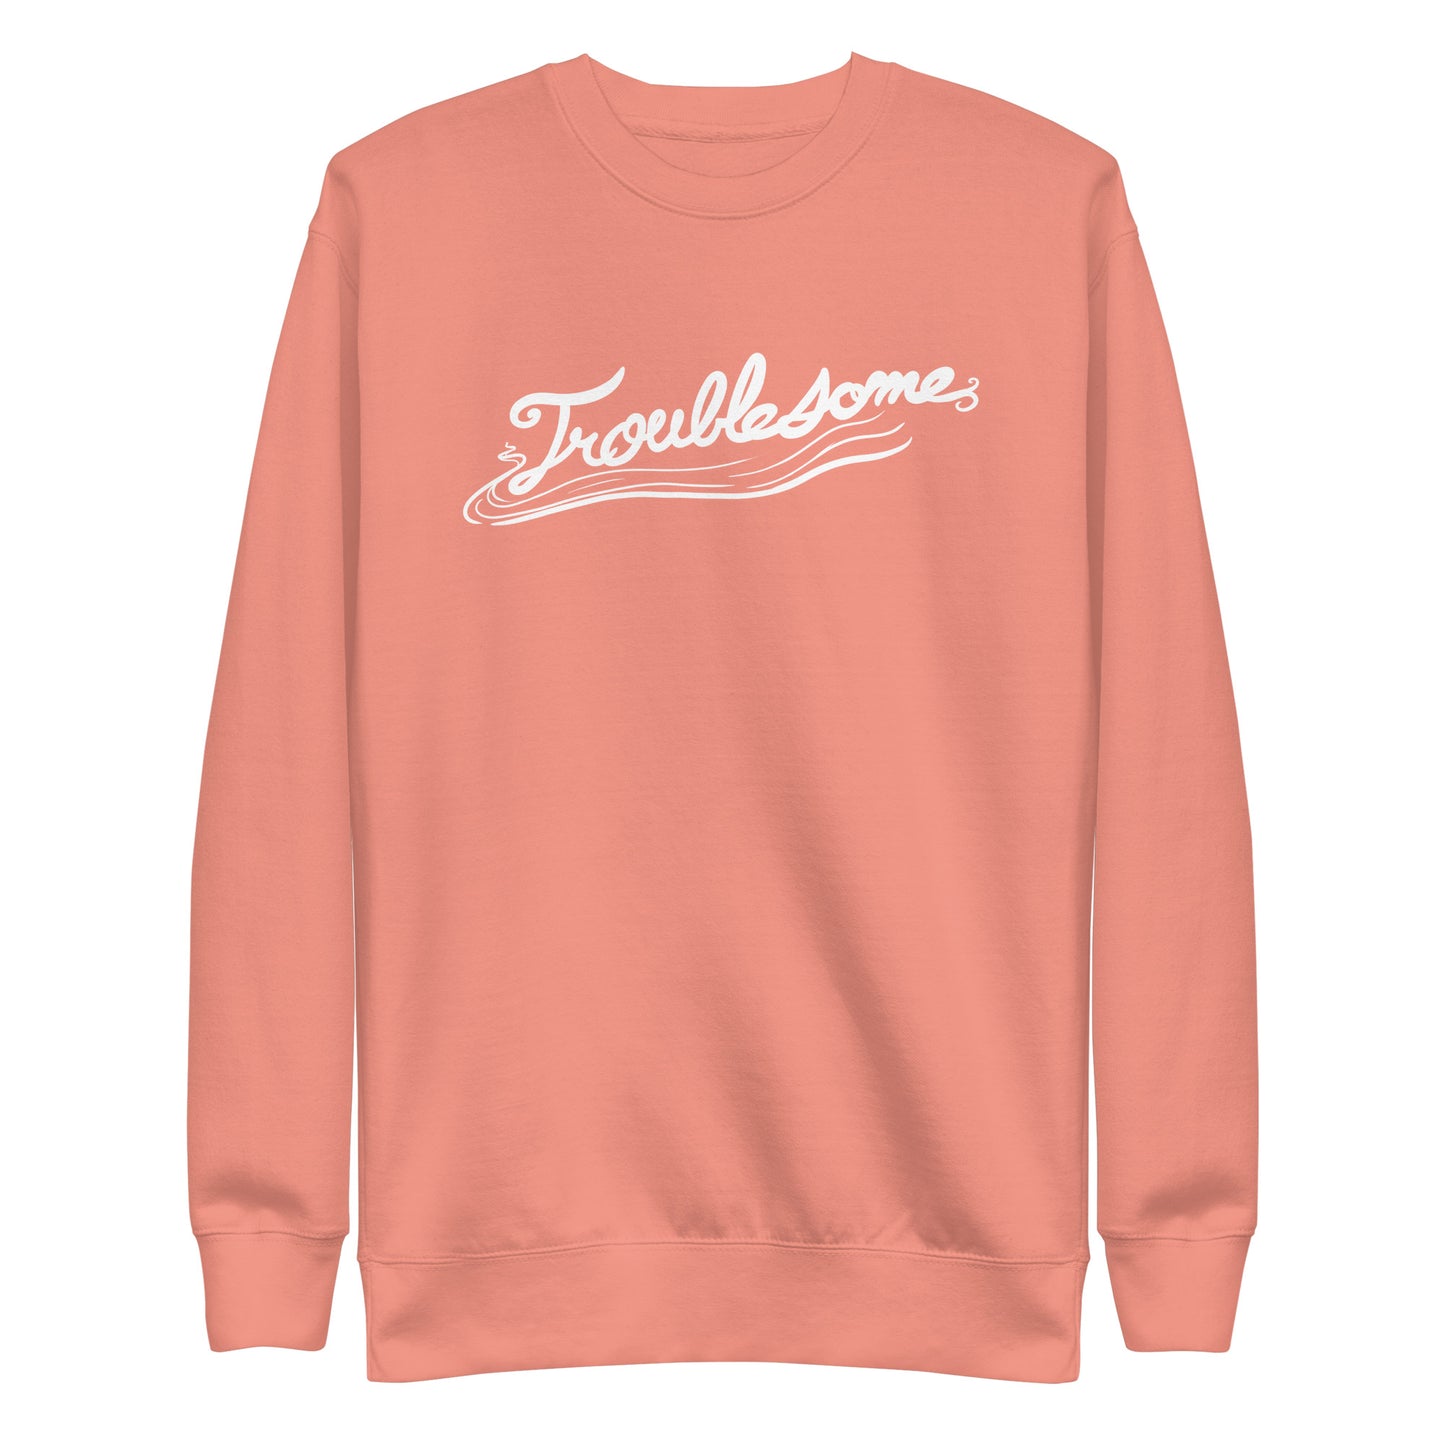 "Troublesome" Sweatshirt